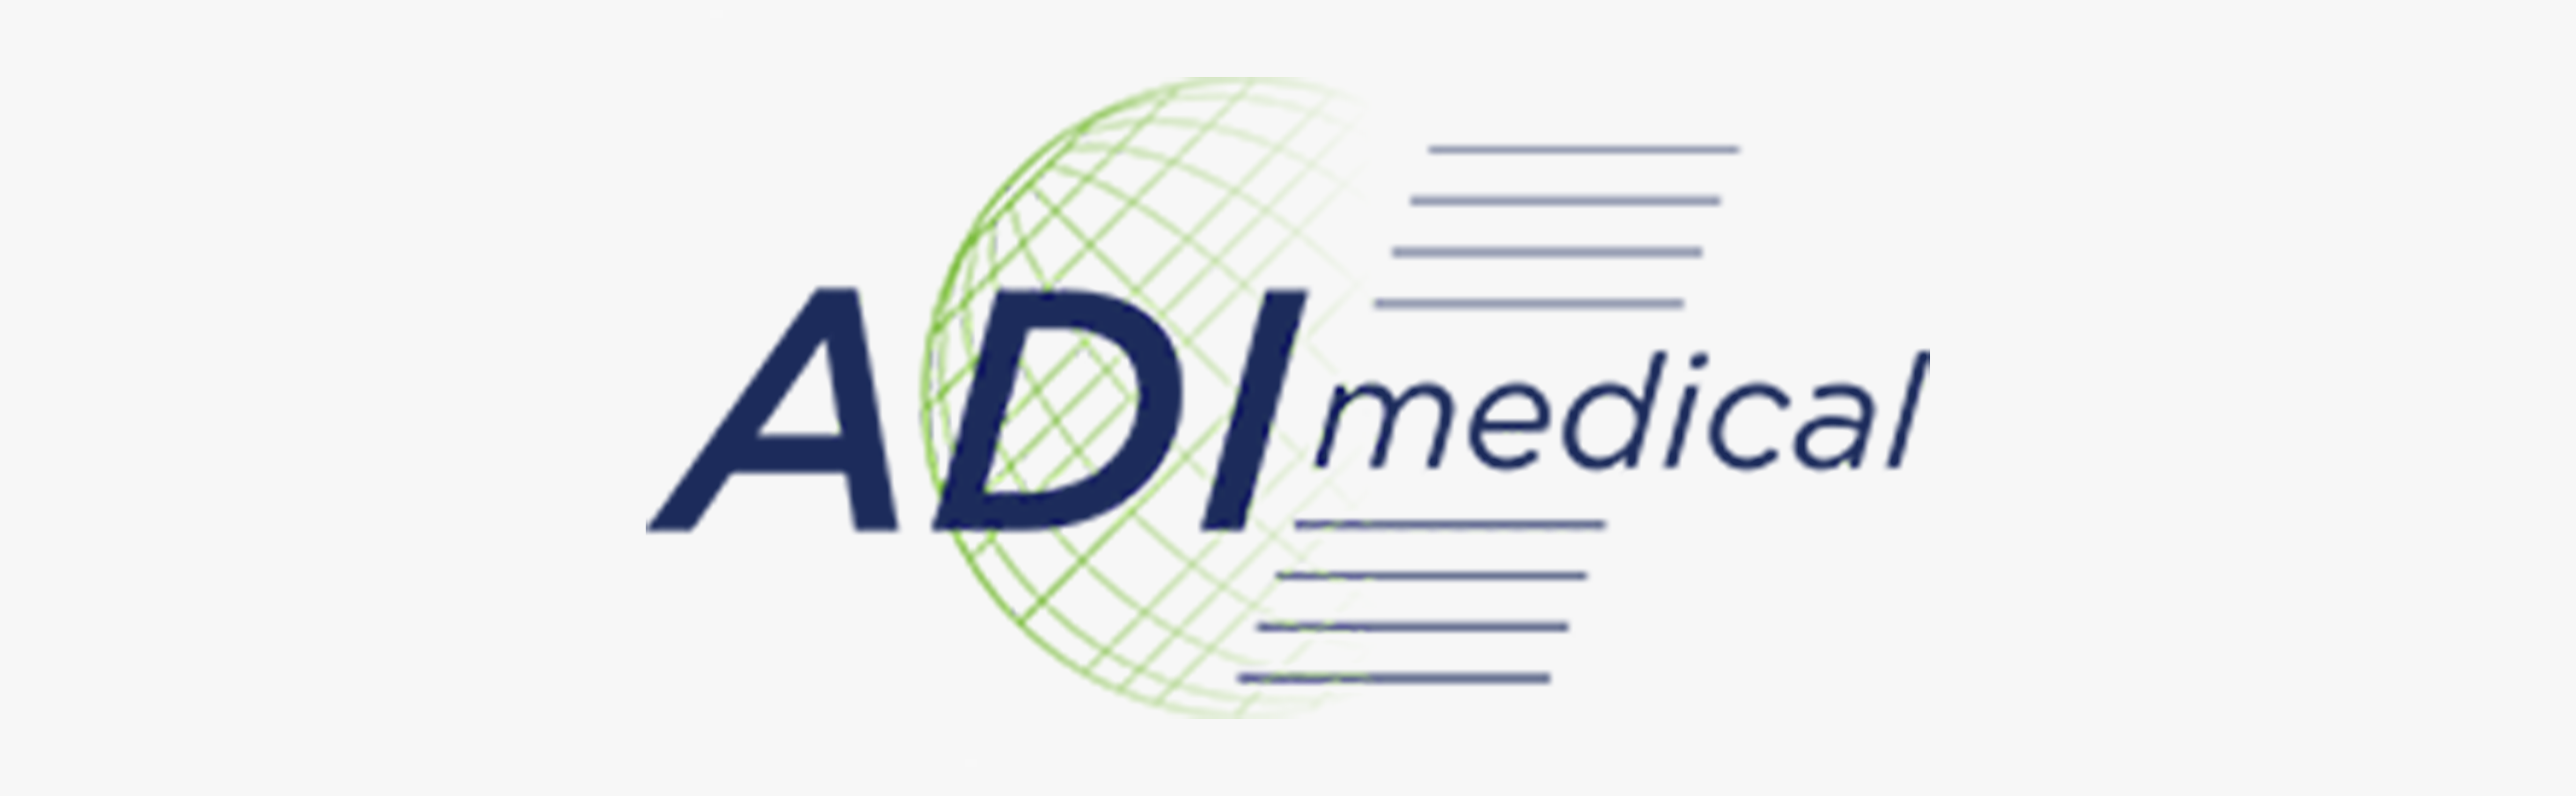 ADI Medical